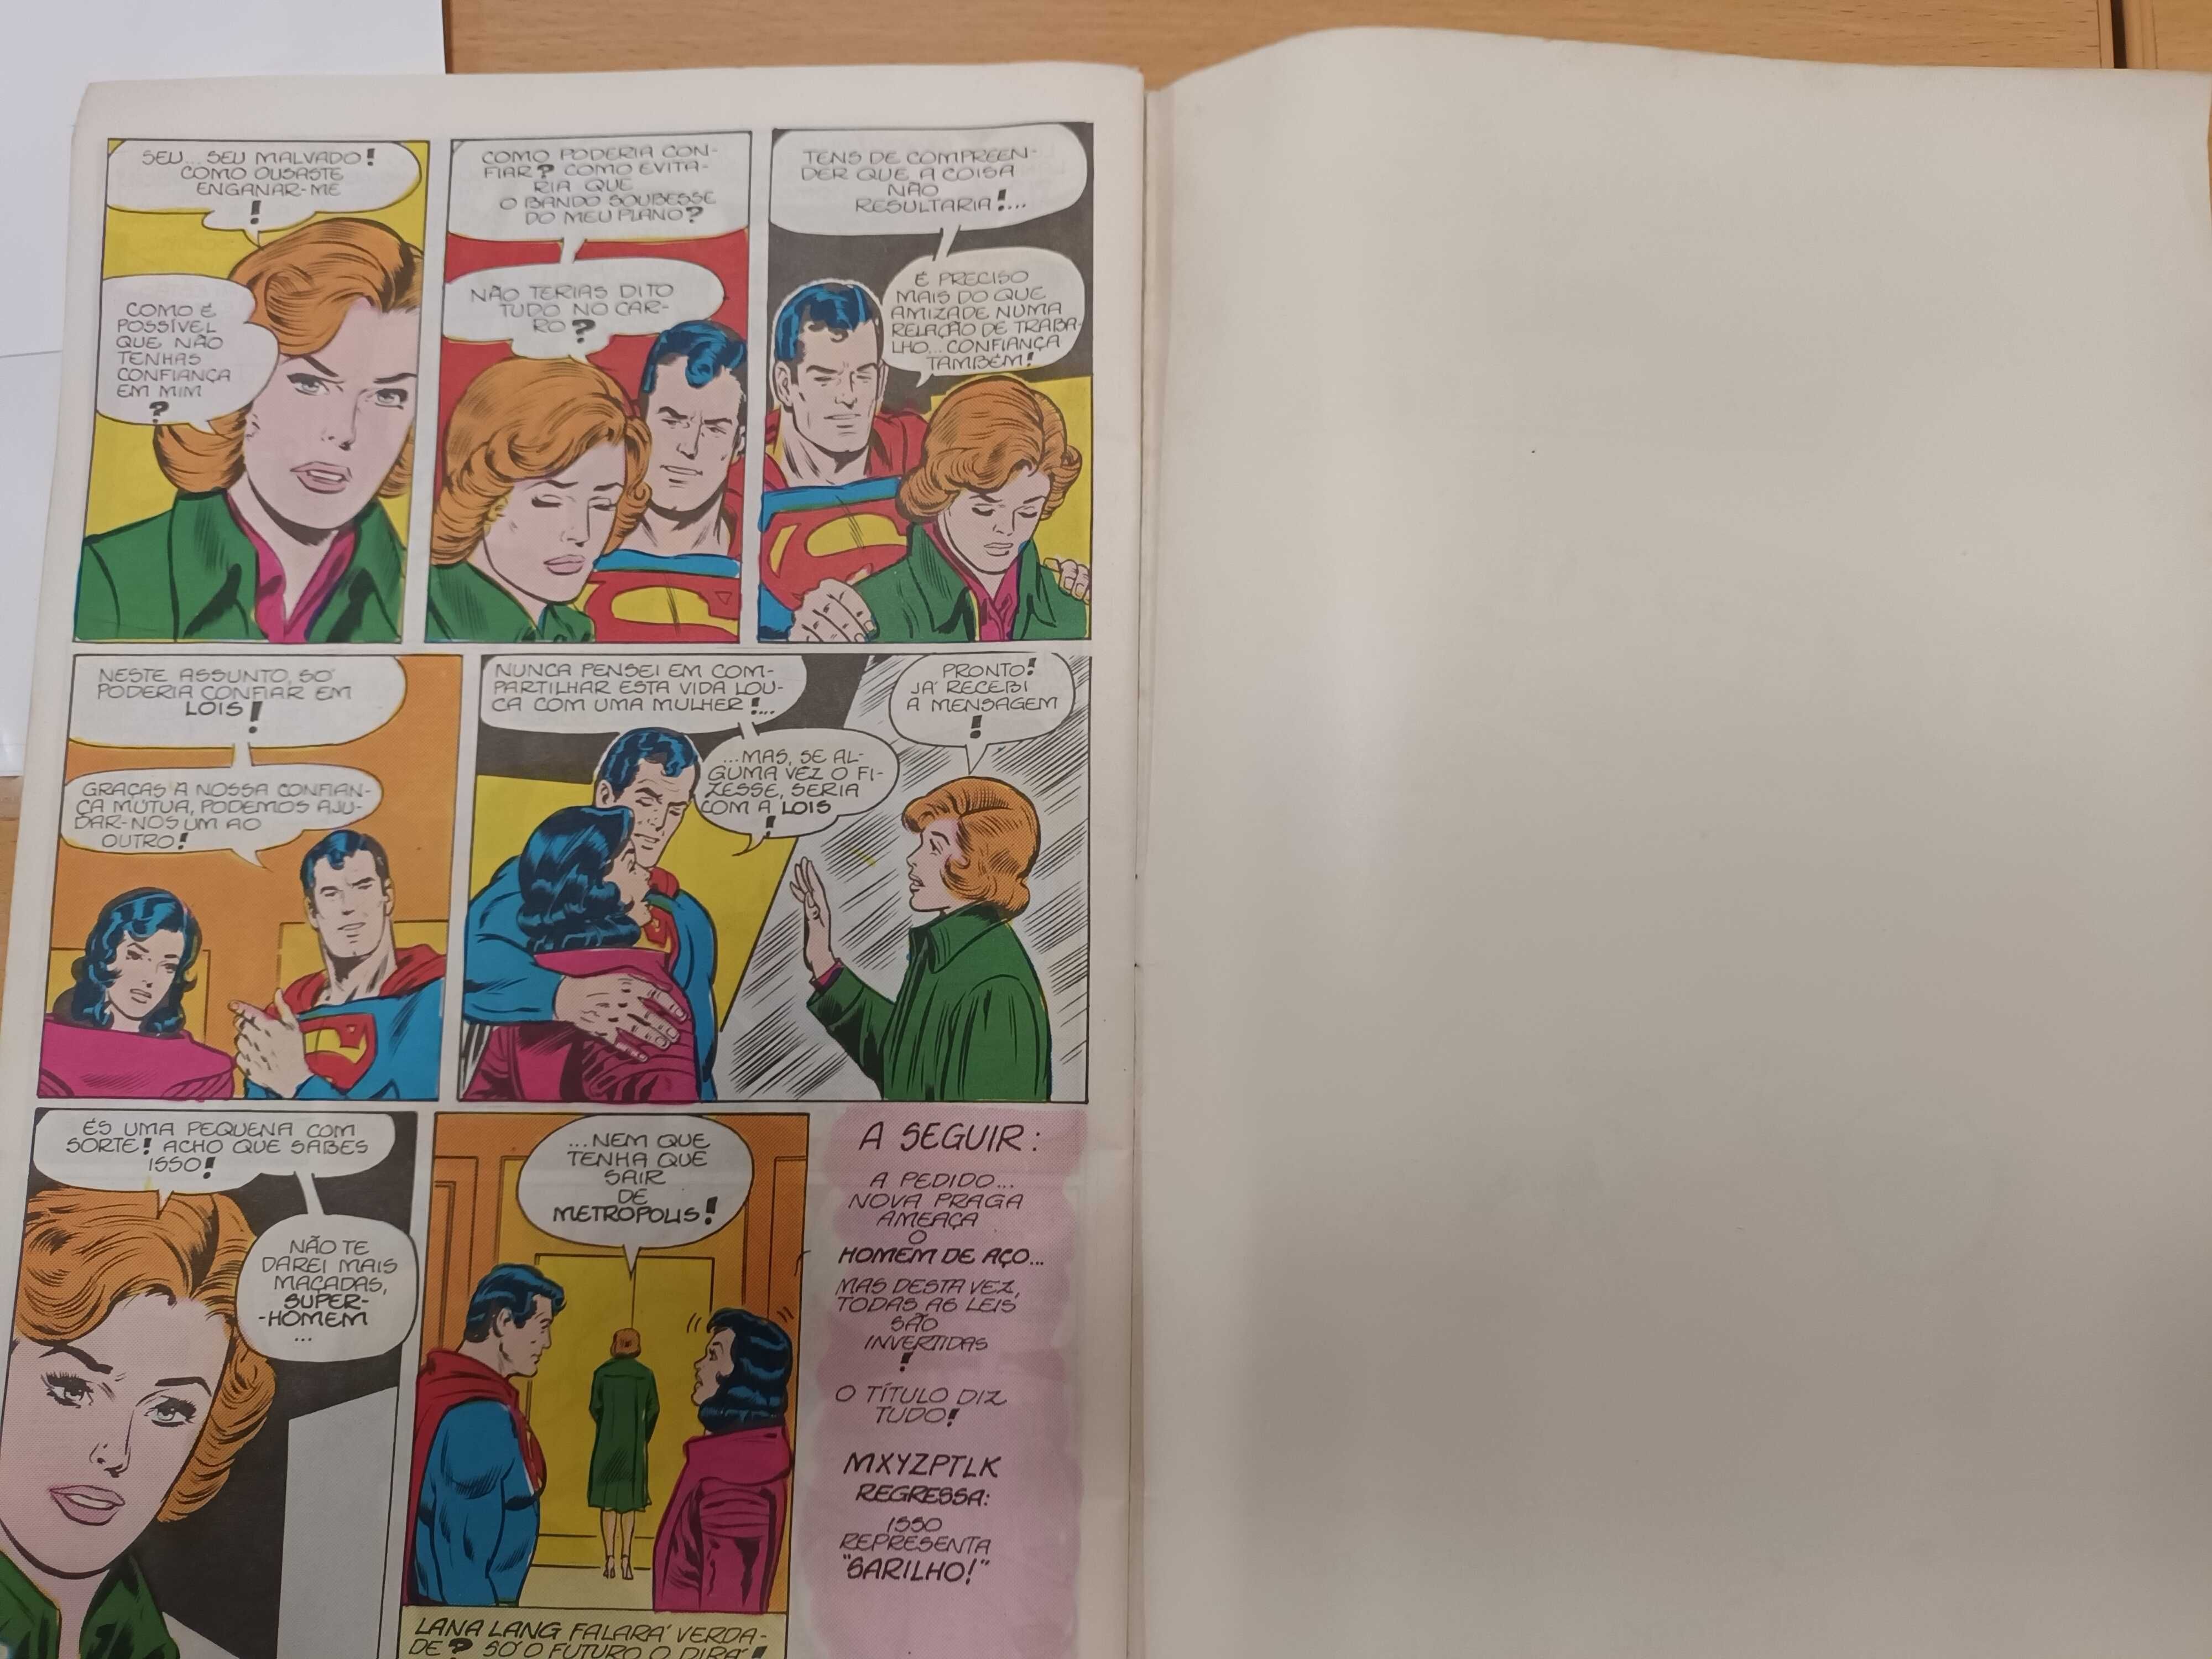 Revistas Super-Homem